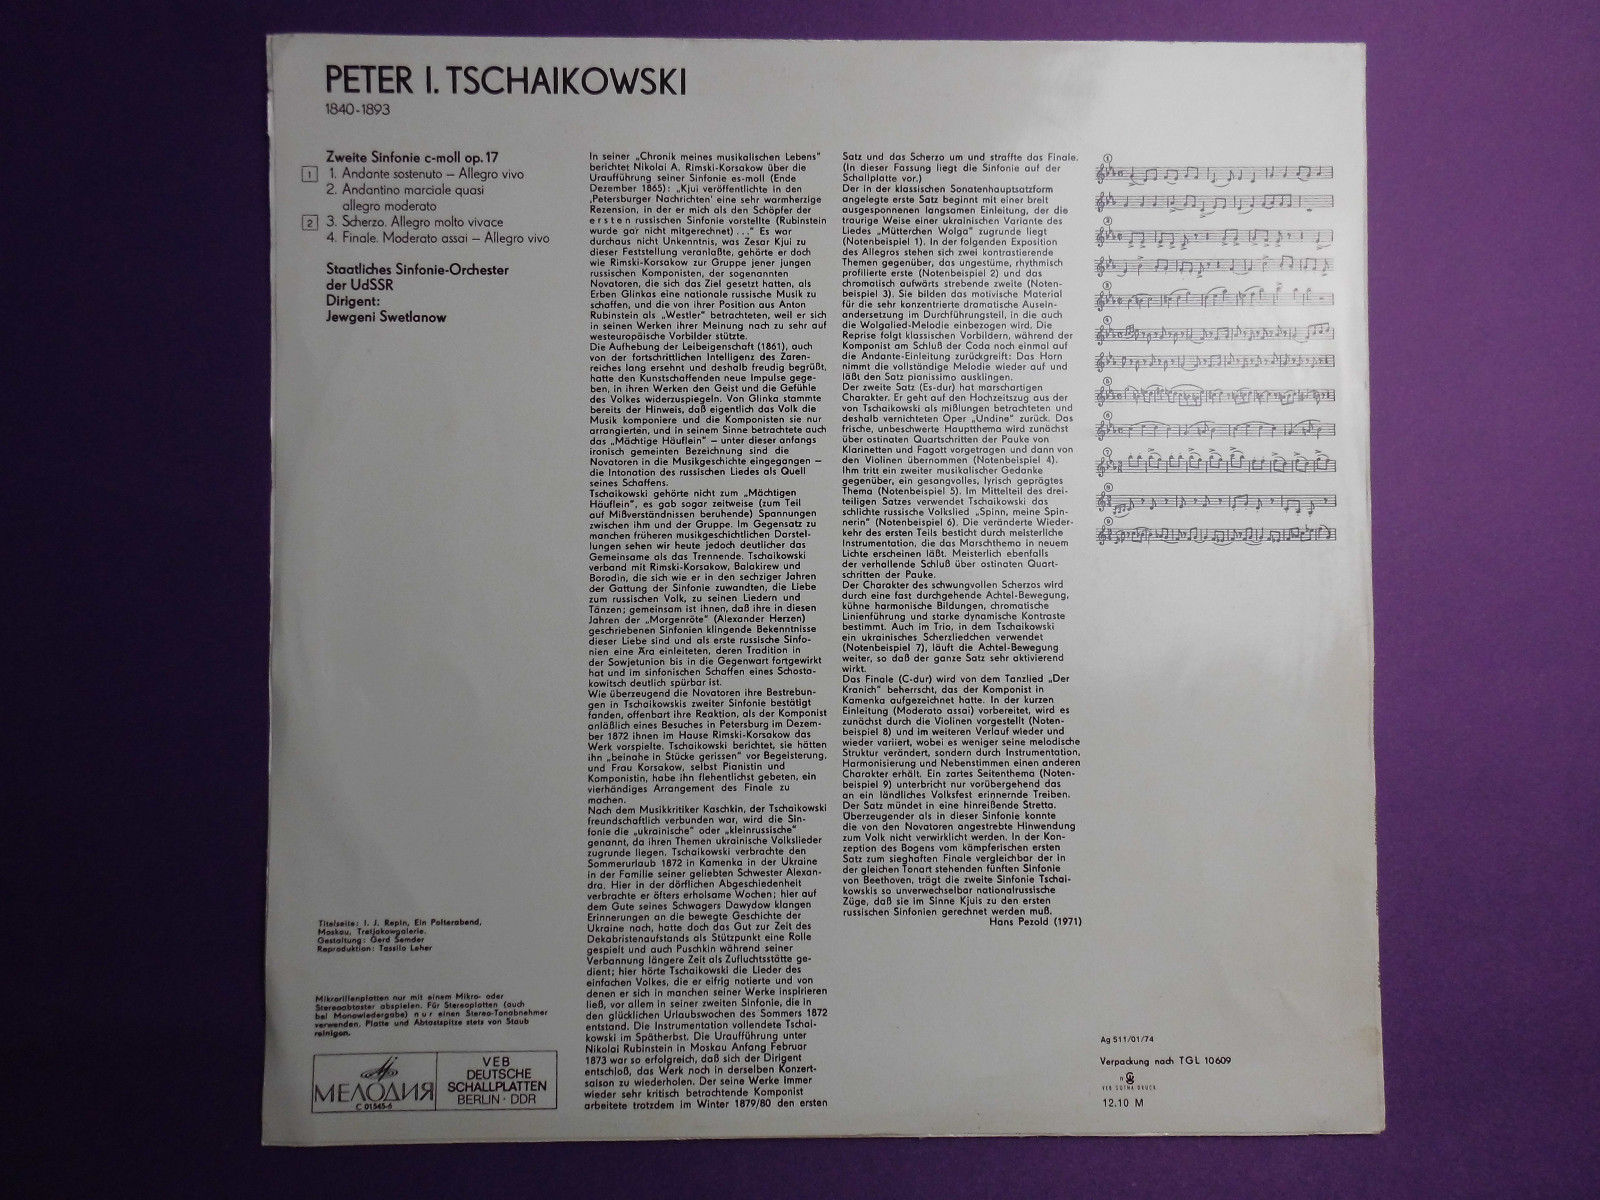 П. Чайковский: Симфония № 2 до минор, соч. 17 (Е. Светланов)